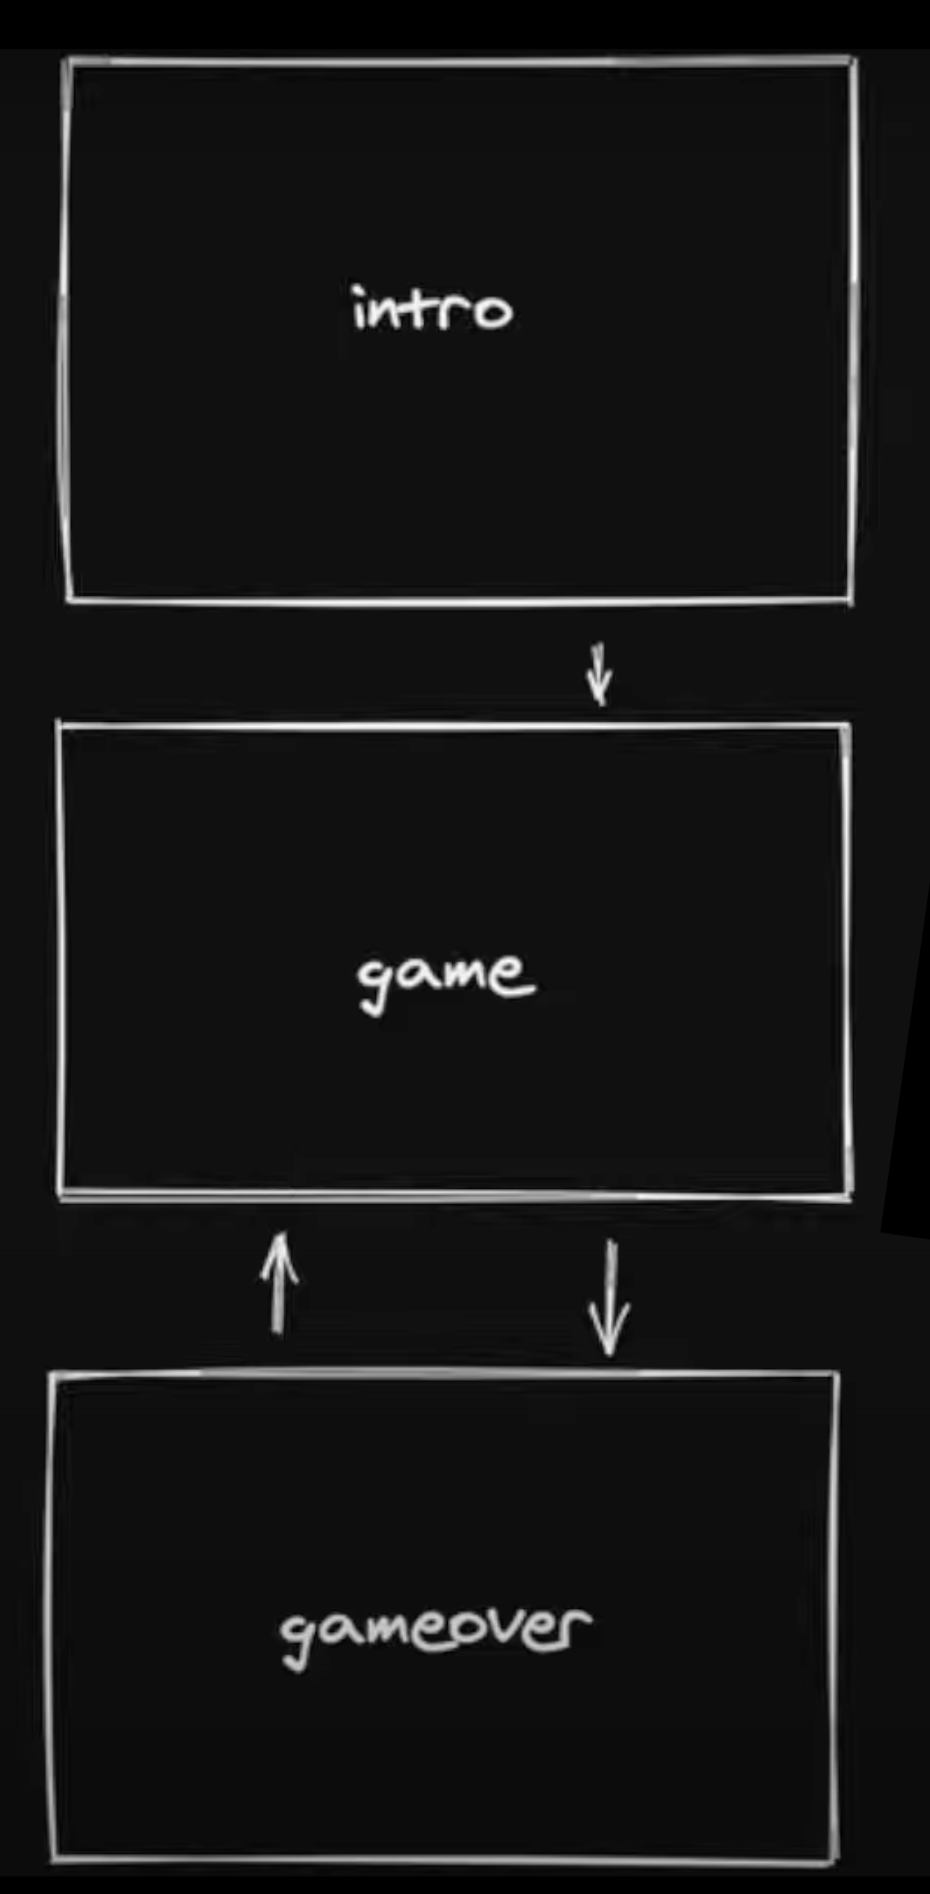 game scenes